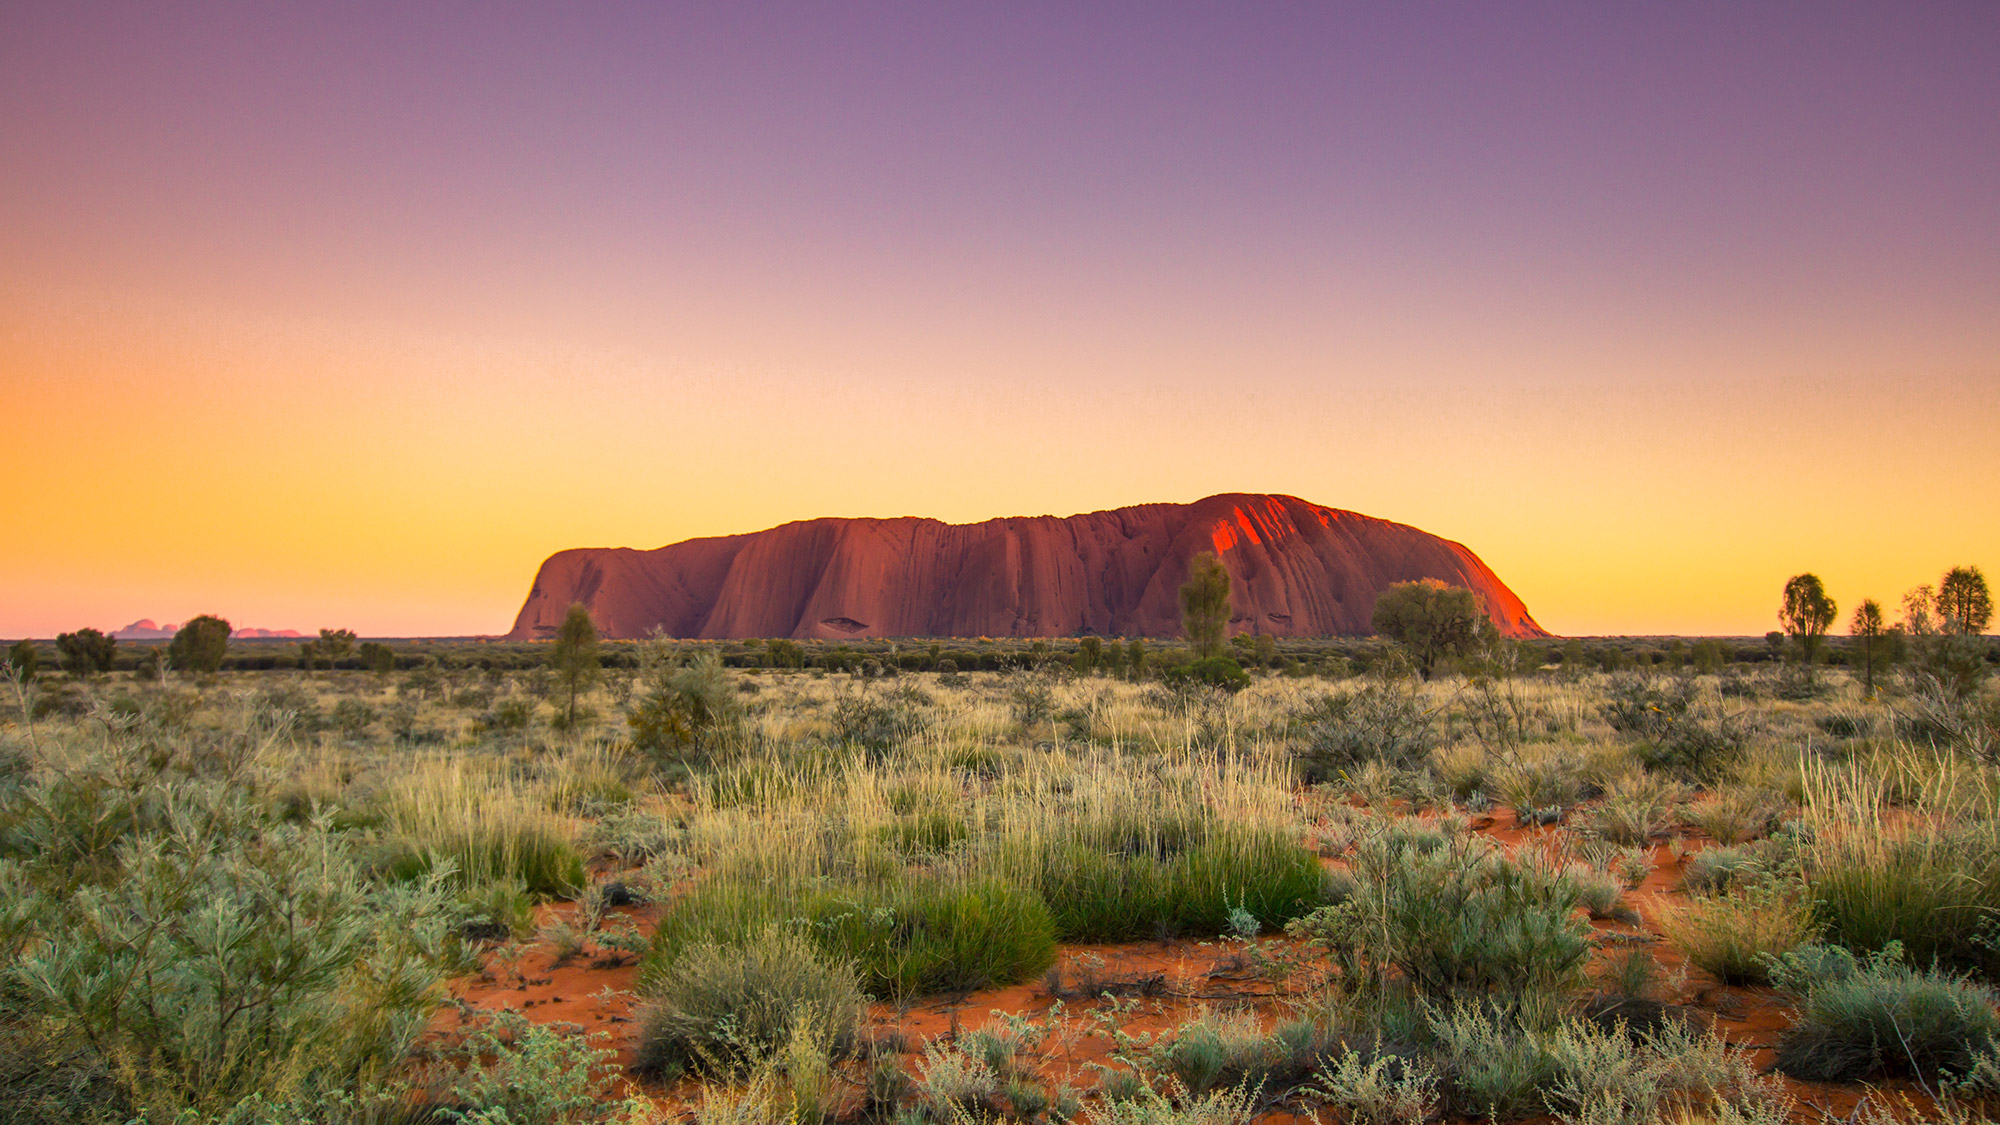 Exclusive Uluru Private Charter Weekend Getaway Departing Perth